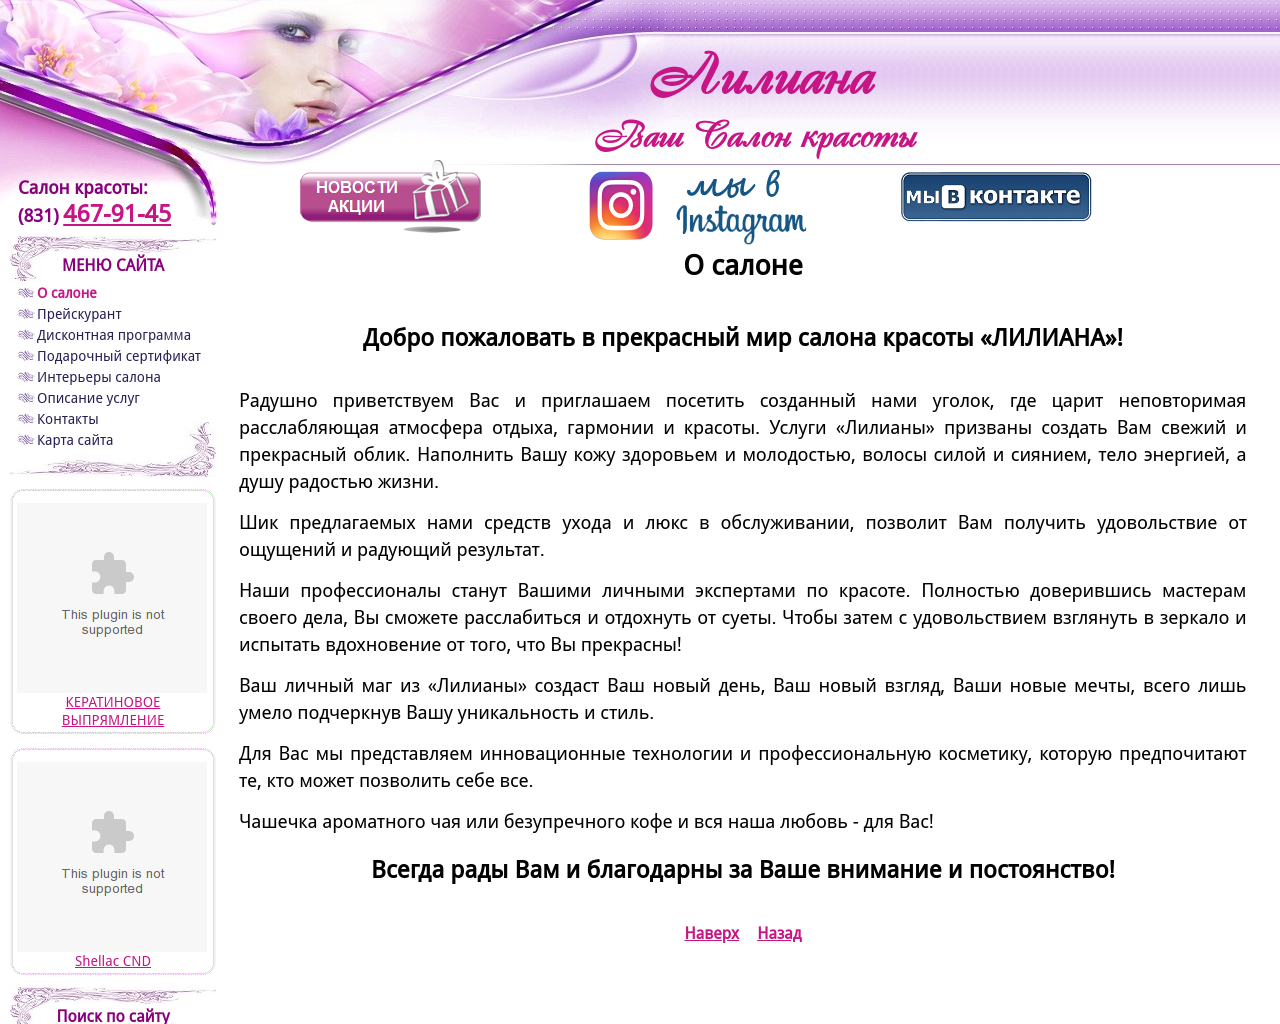 Изображение сайта liliana-nn.ru в разрешении 1280x1024